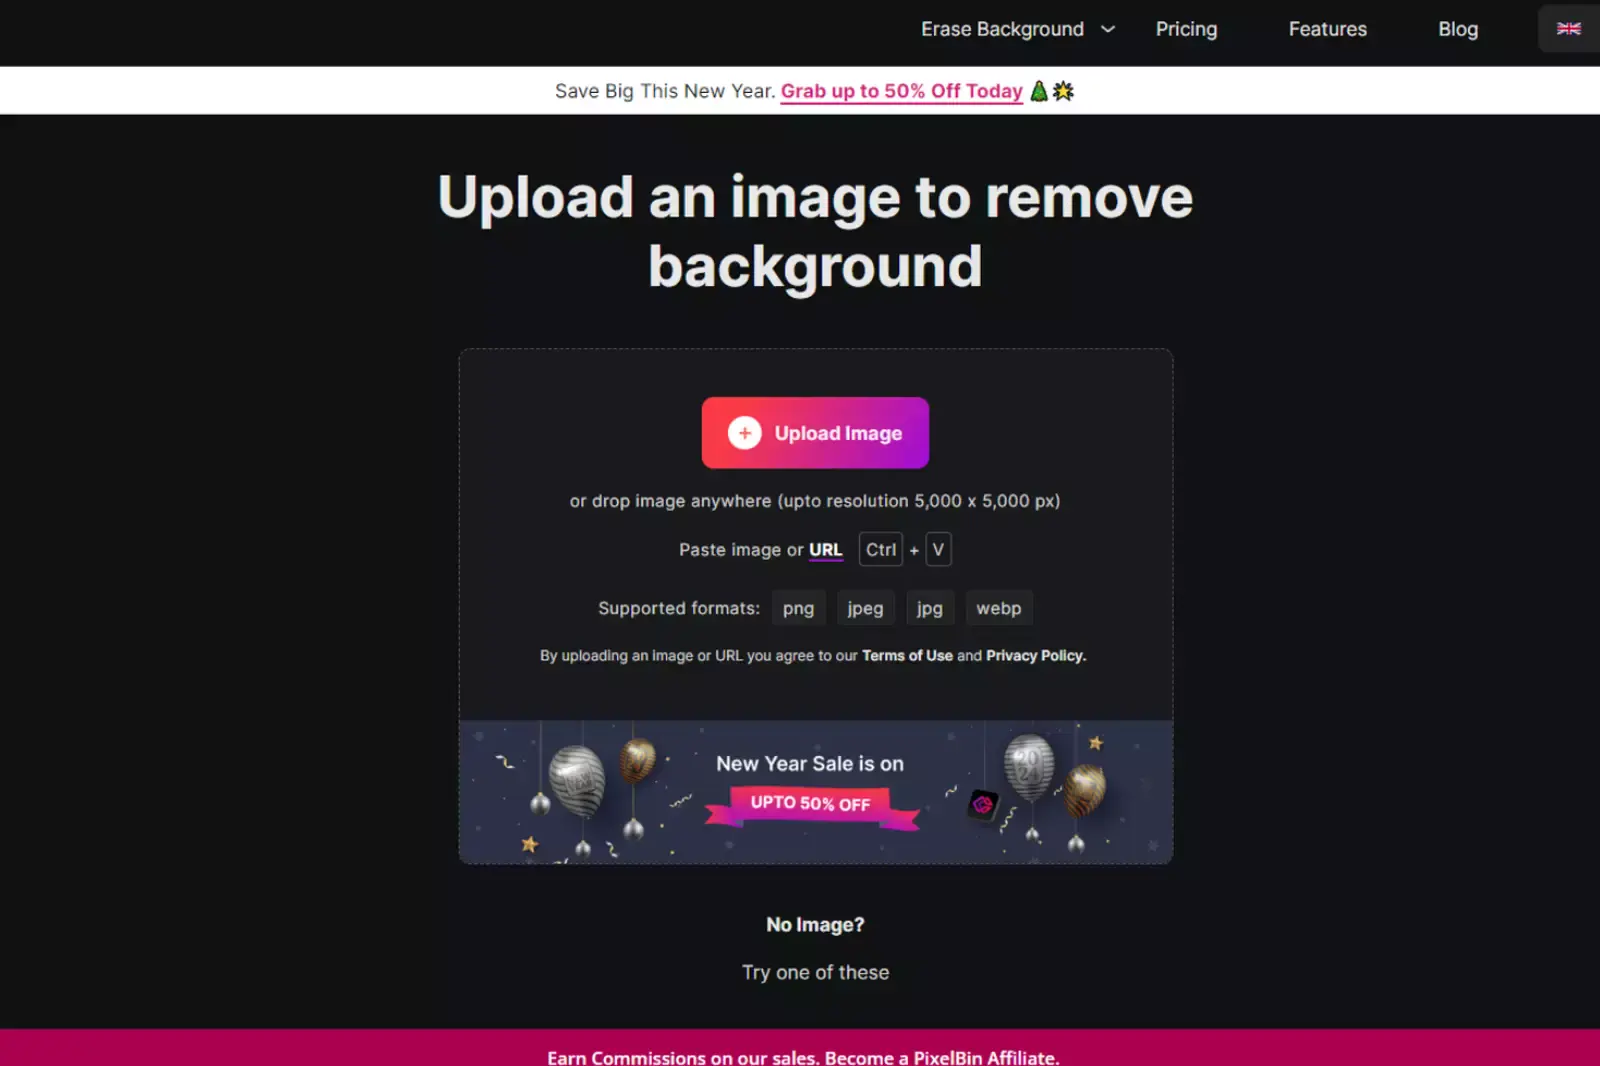 Uploading Your Image